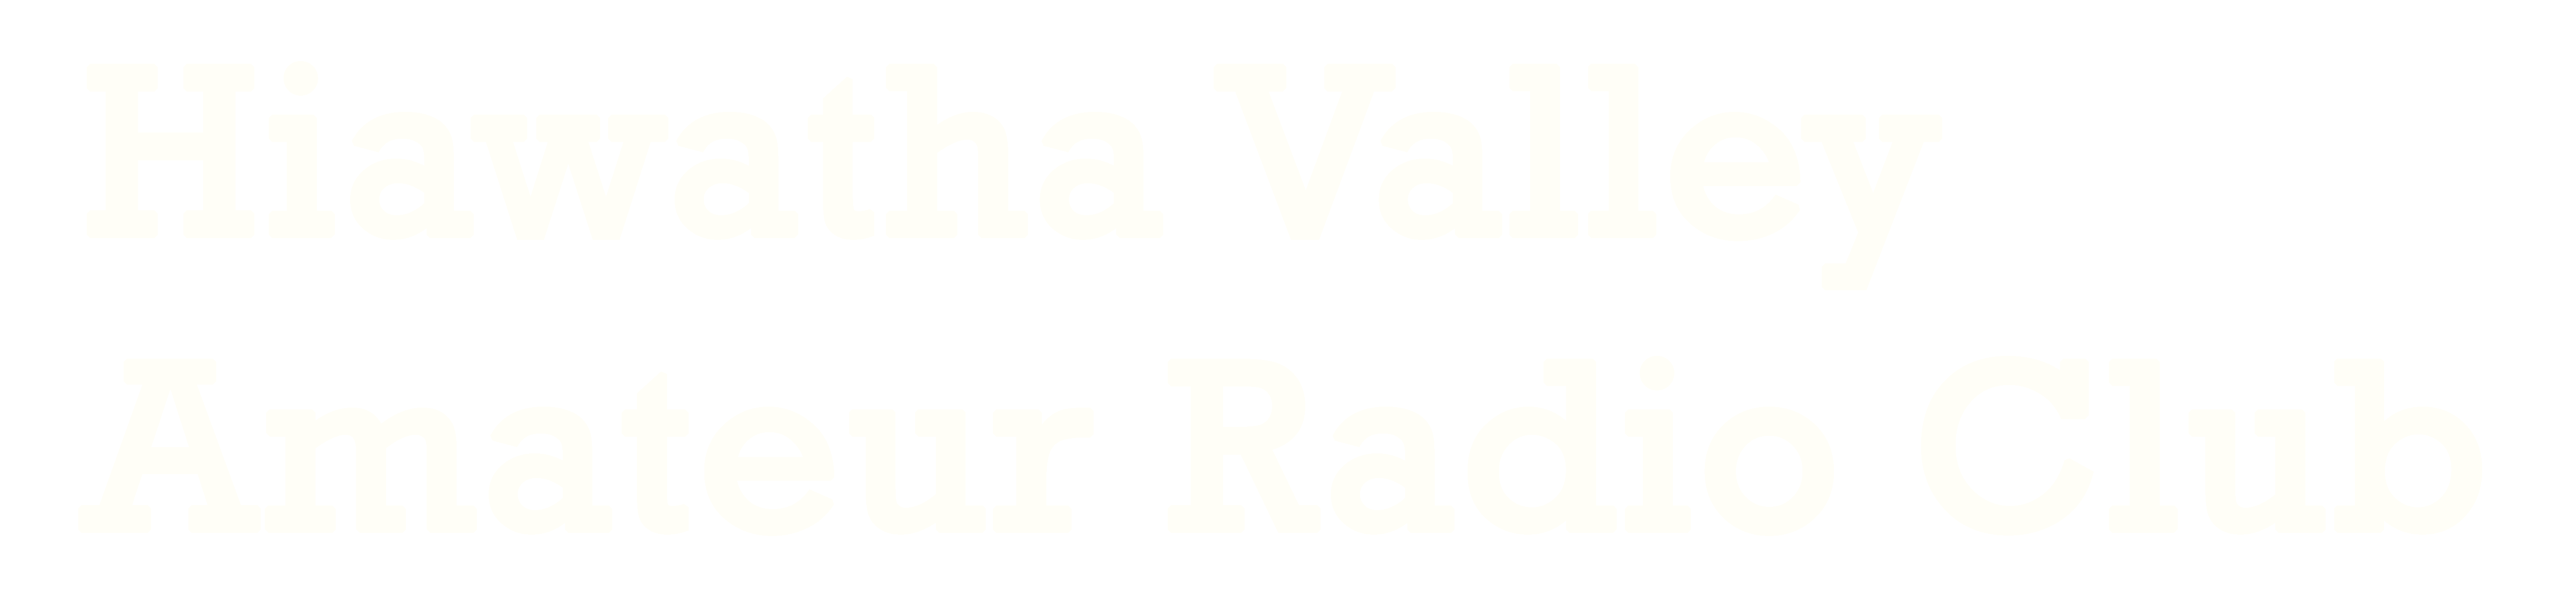 Hiawatha Valley Amateur Radio Club